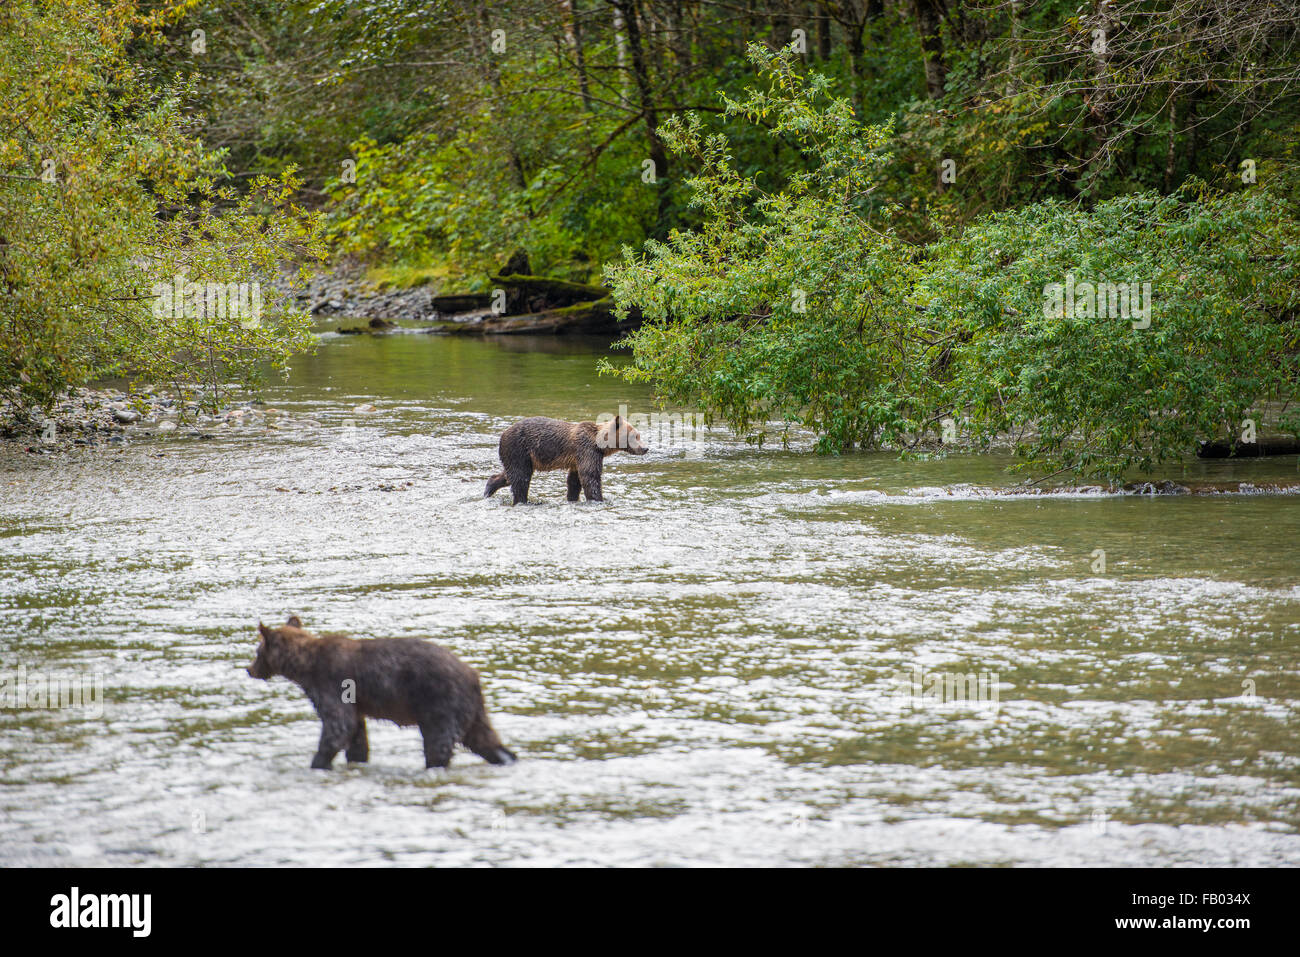 Grizzly continentale (Ursus arctos horribilis) passeggiate in acqua, Bute ingresso, Isola di Vancouver, British Columbia, Canada Foto Stock